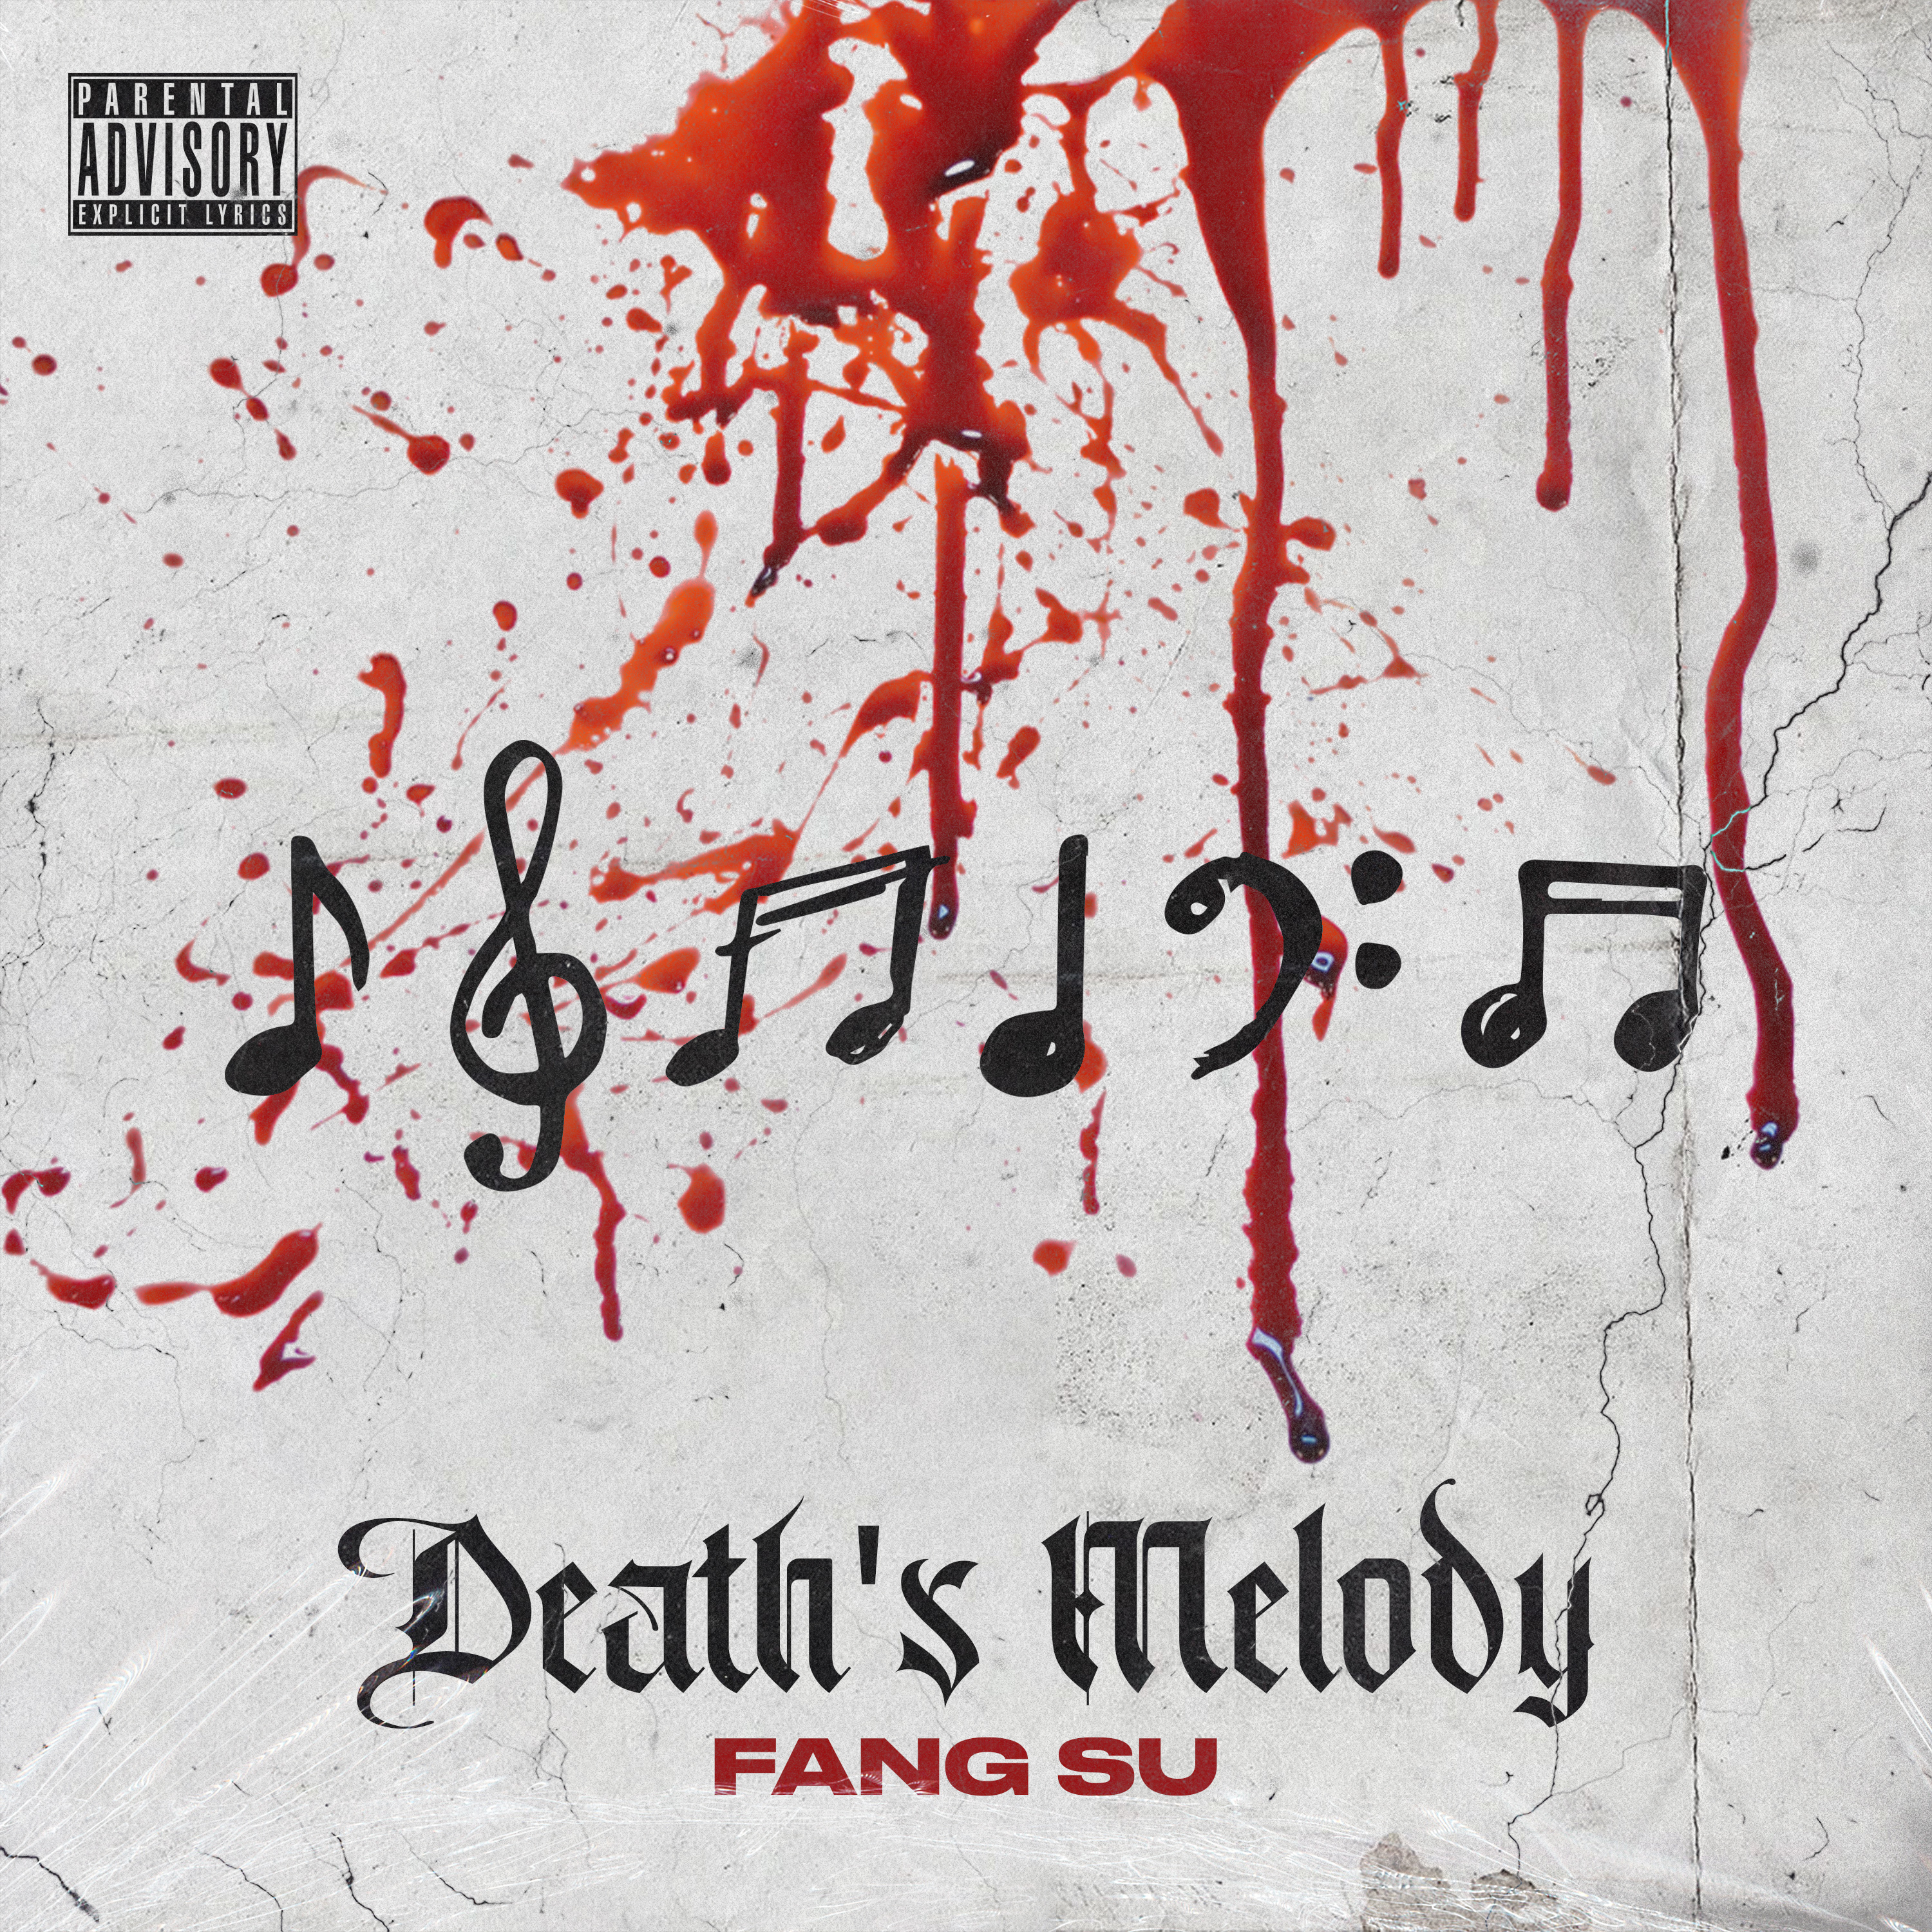 Fang Su – “Death’s Melody”